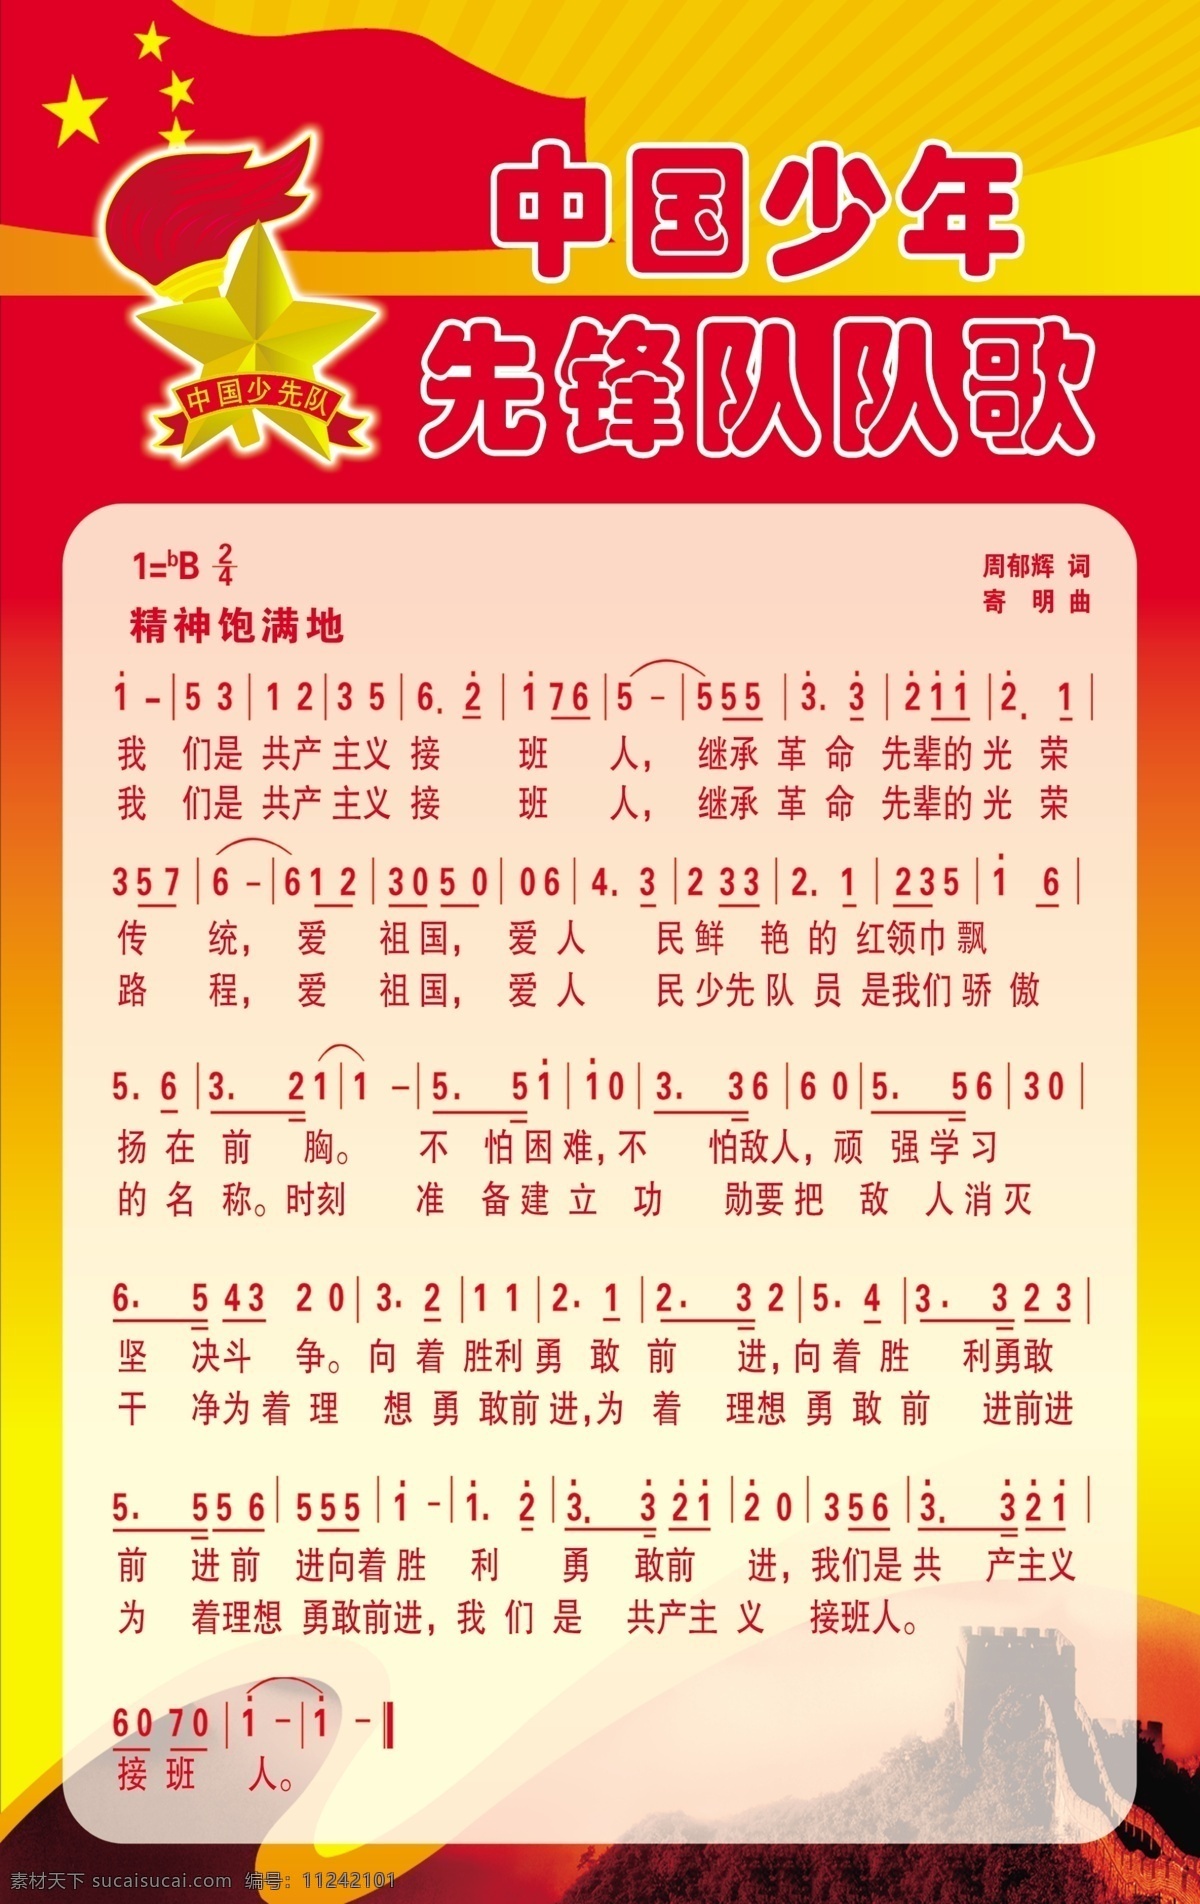 中国少年先锋队 队歌 歌谱 学校海报 红色